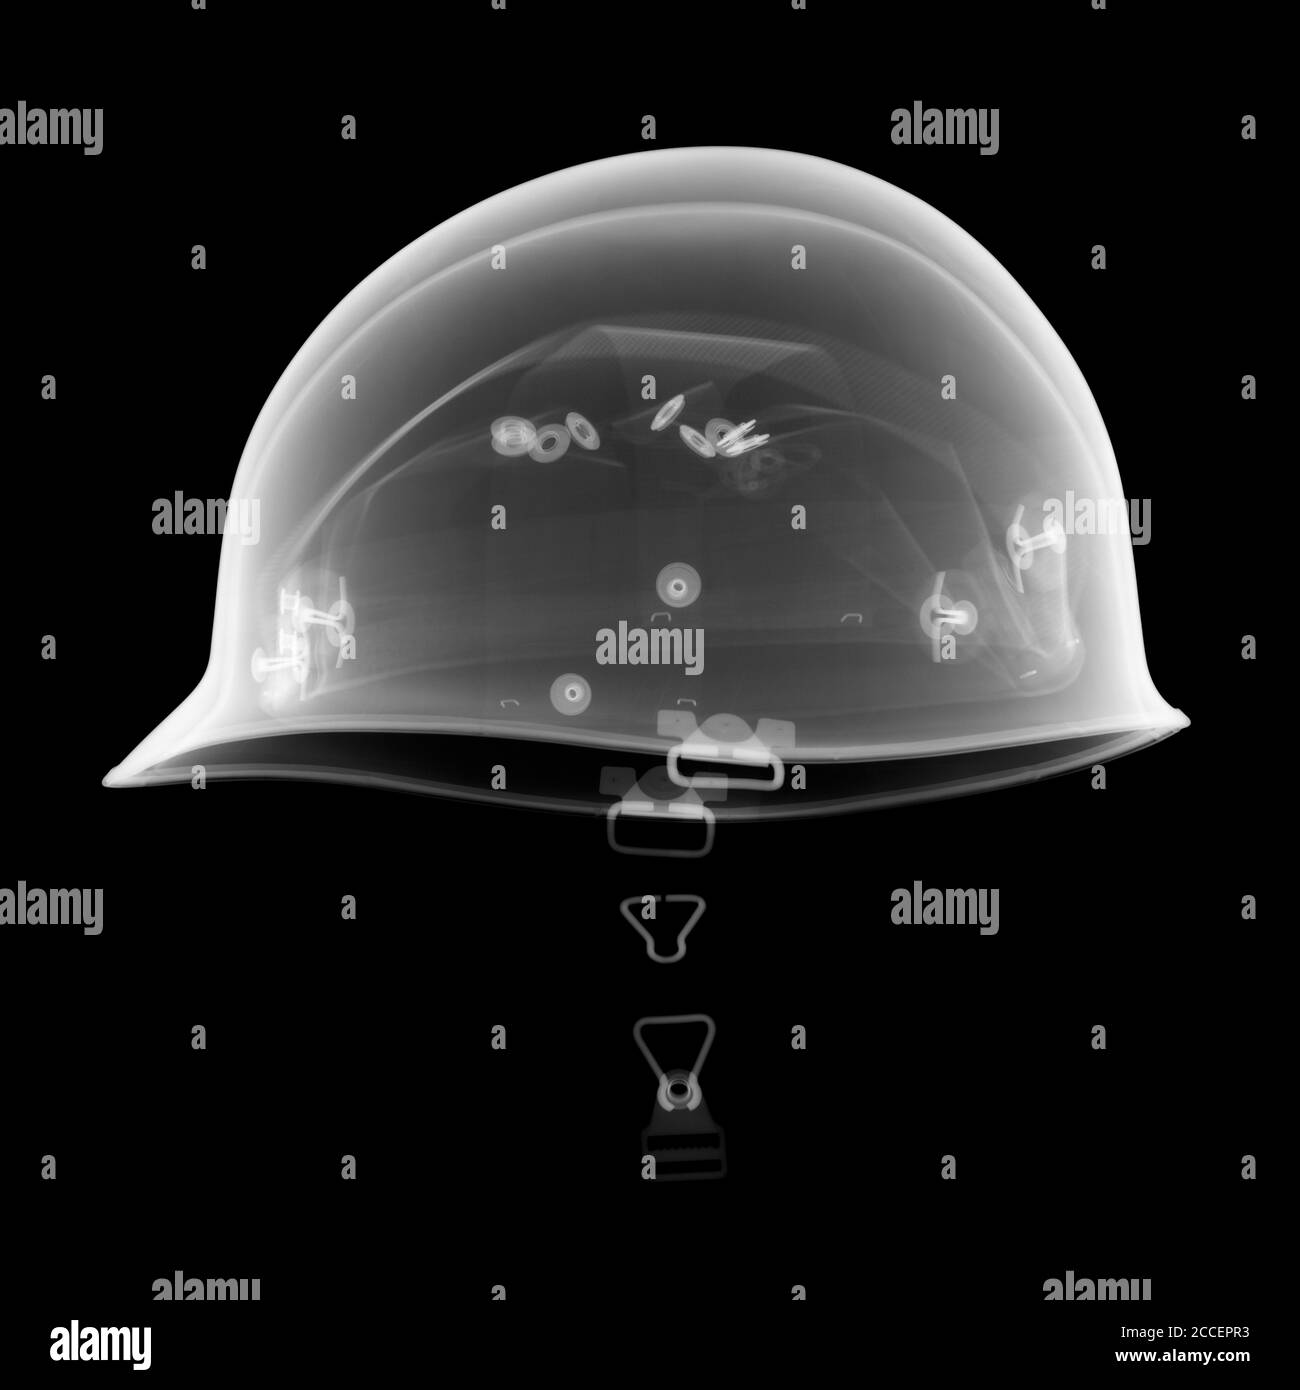 Army helmet, X-ray Stock Photo